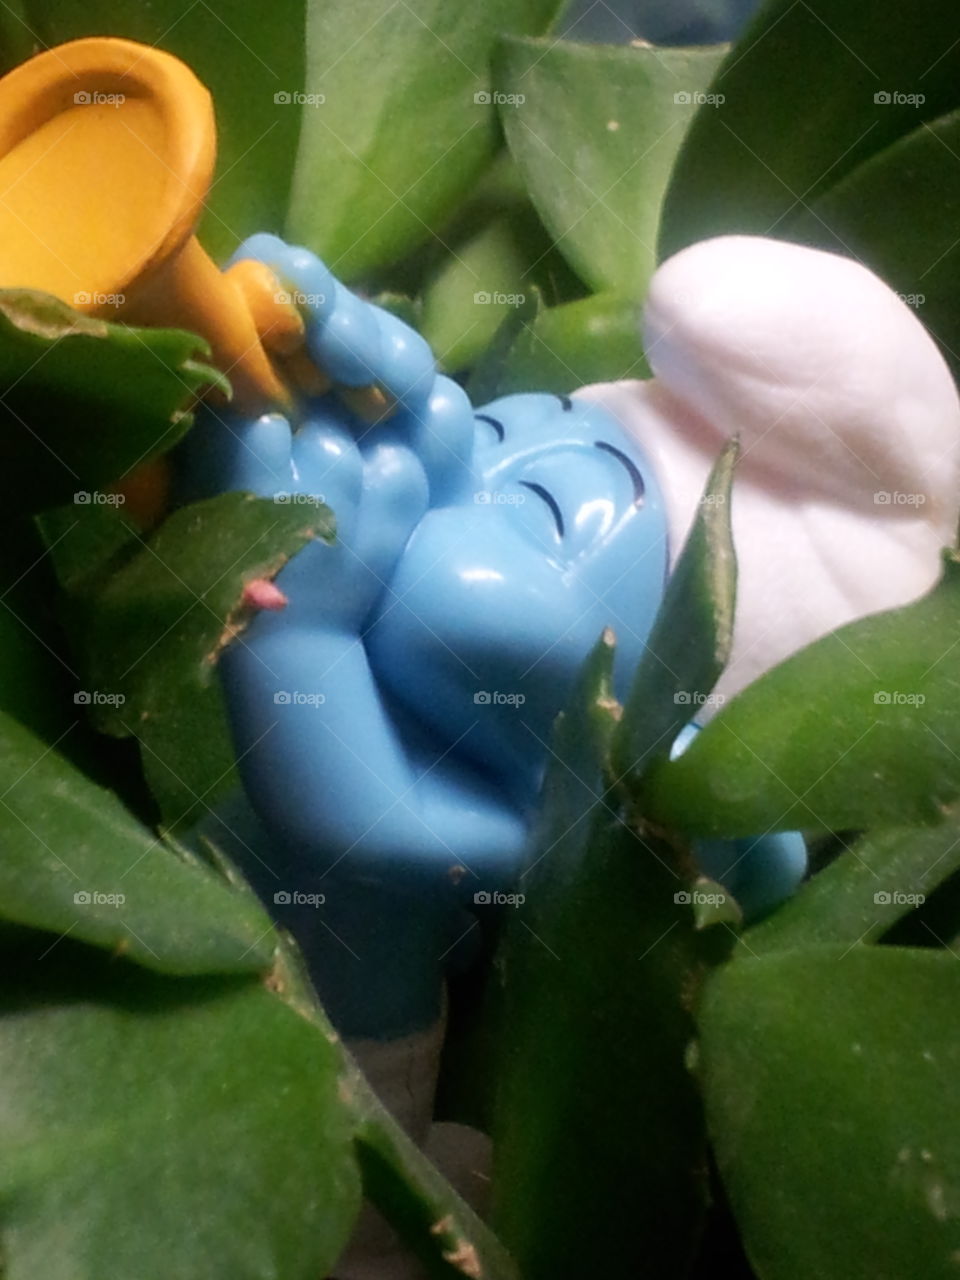 A Smurf found hidden in a plant pot.